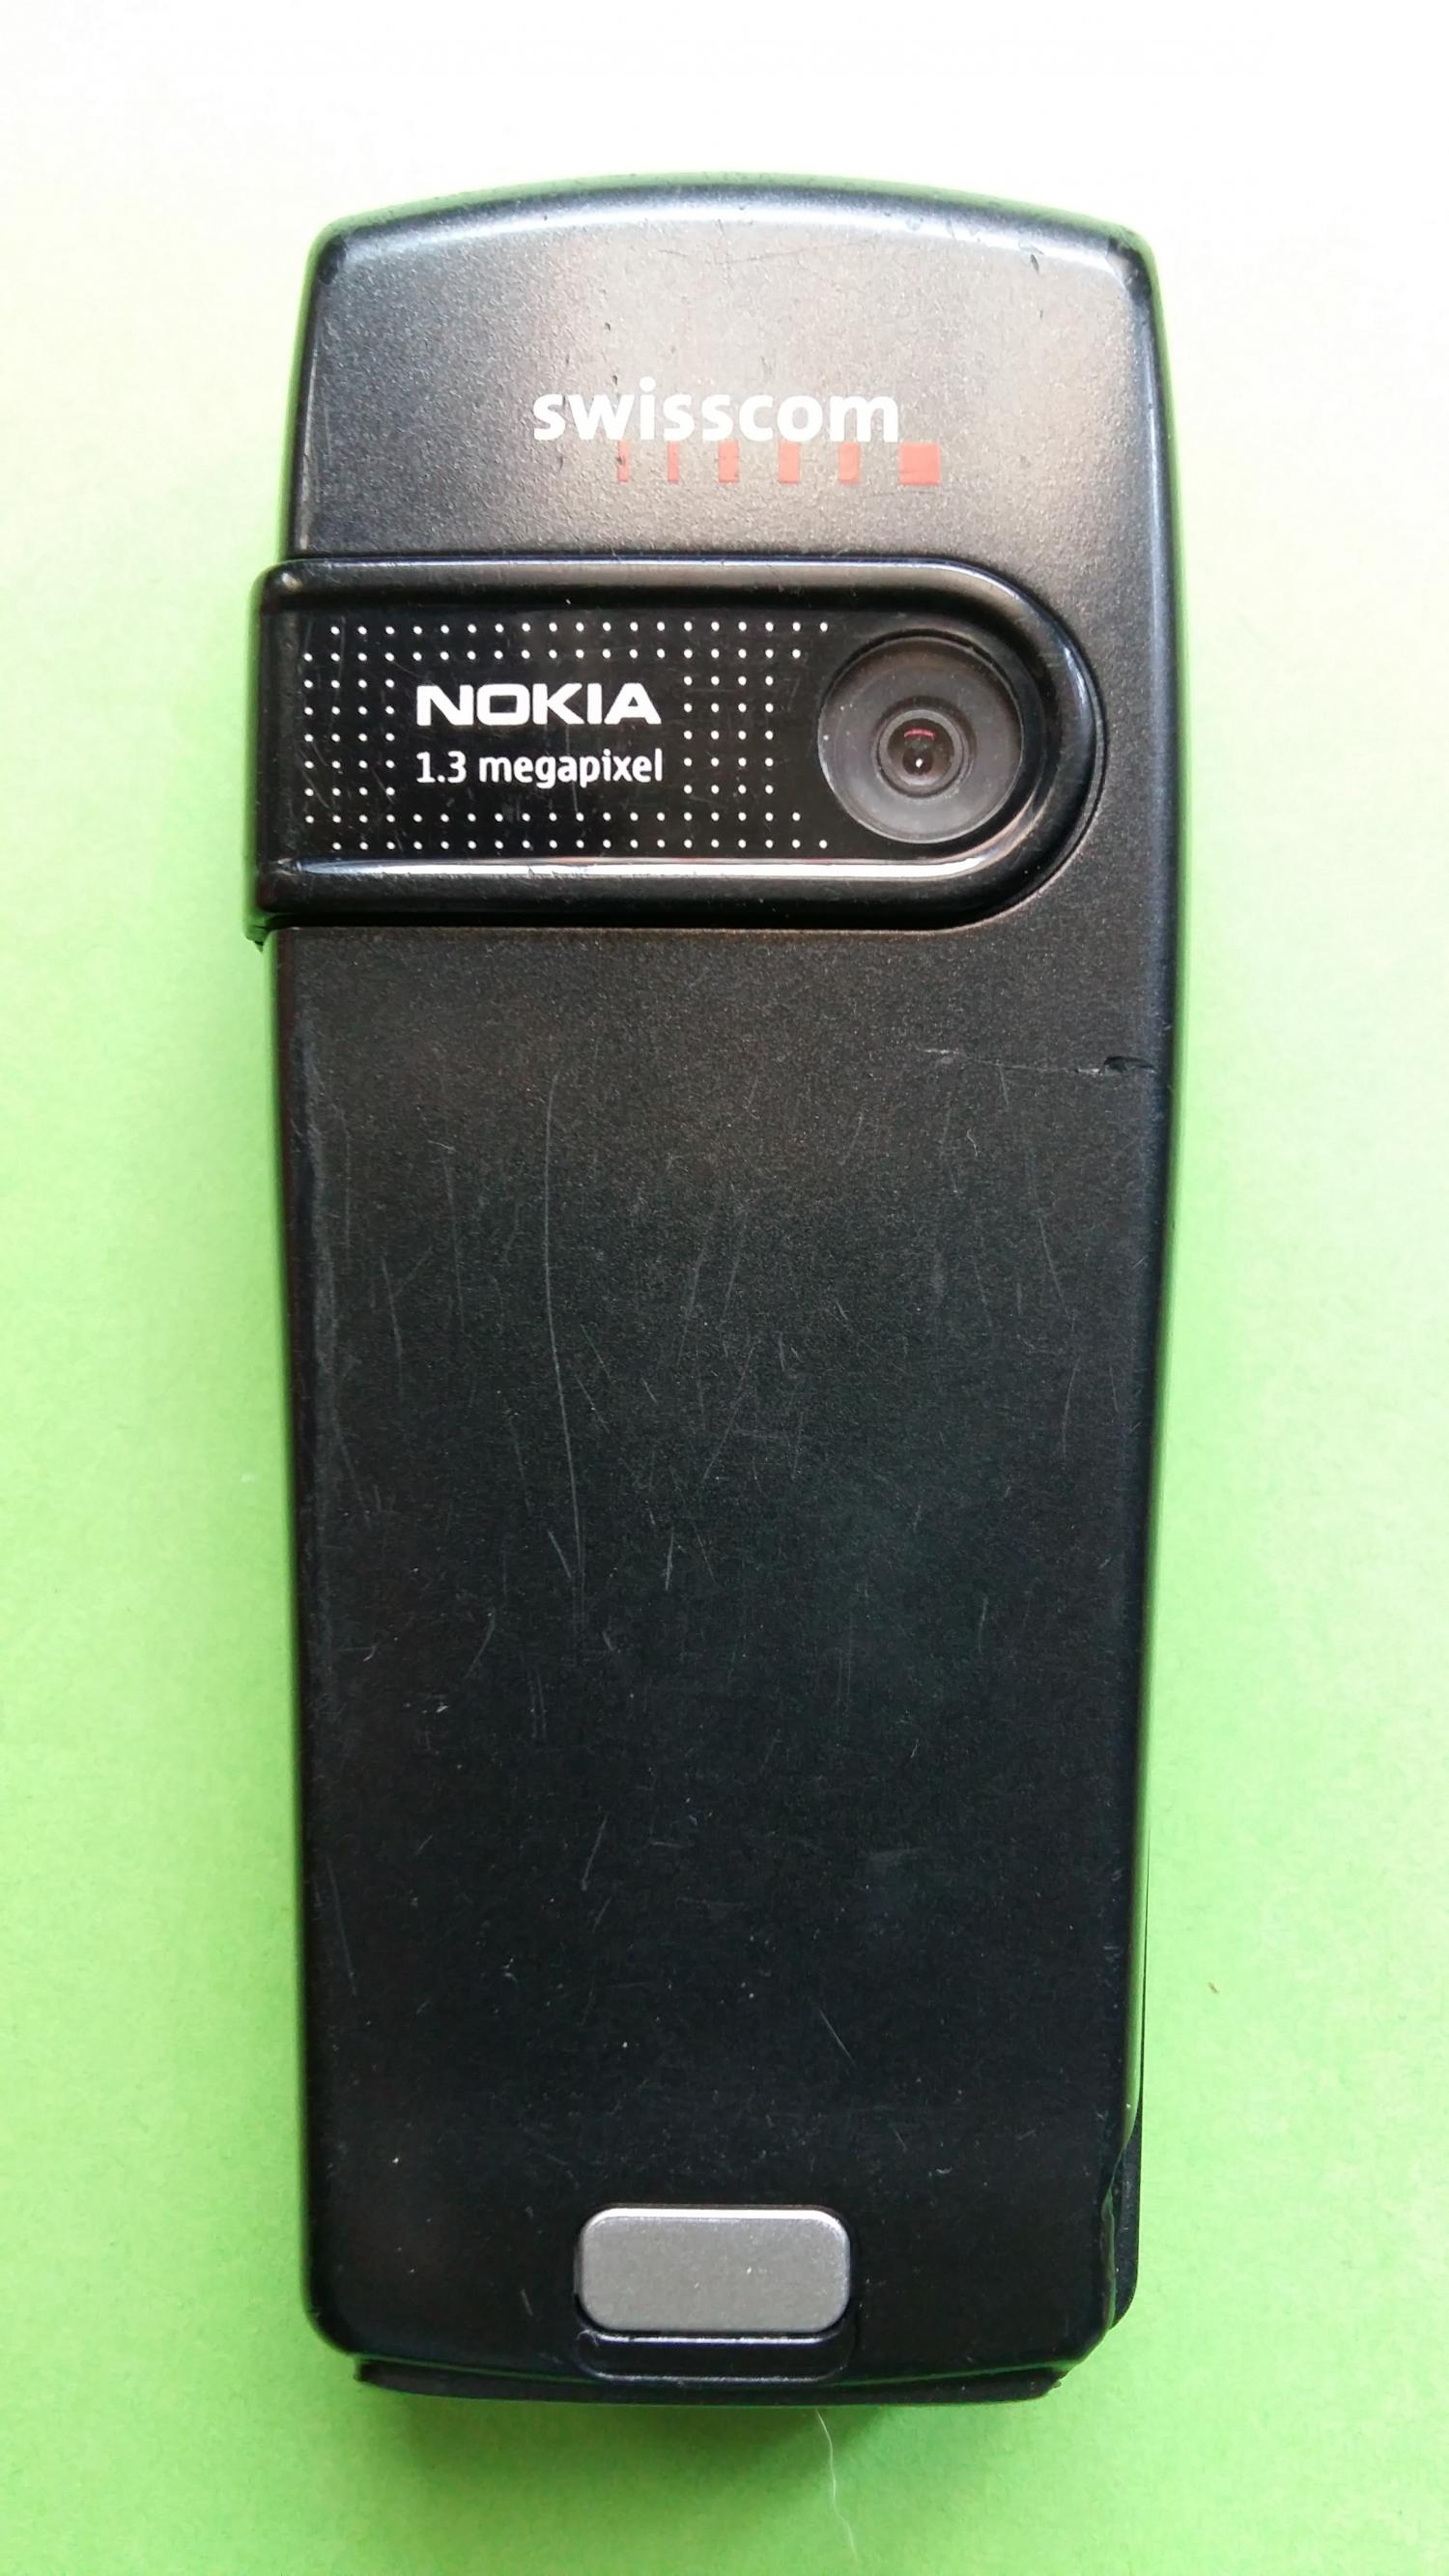 image-7328130-Nokia 6230i (9)2.jpg